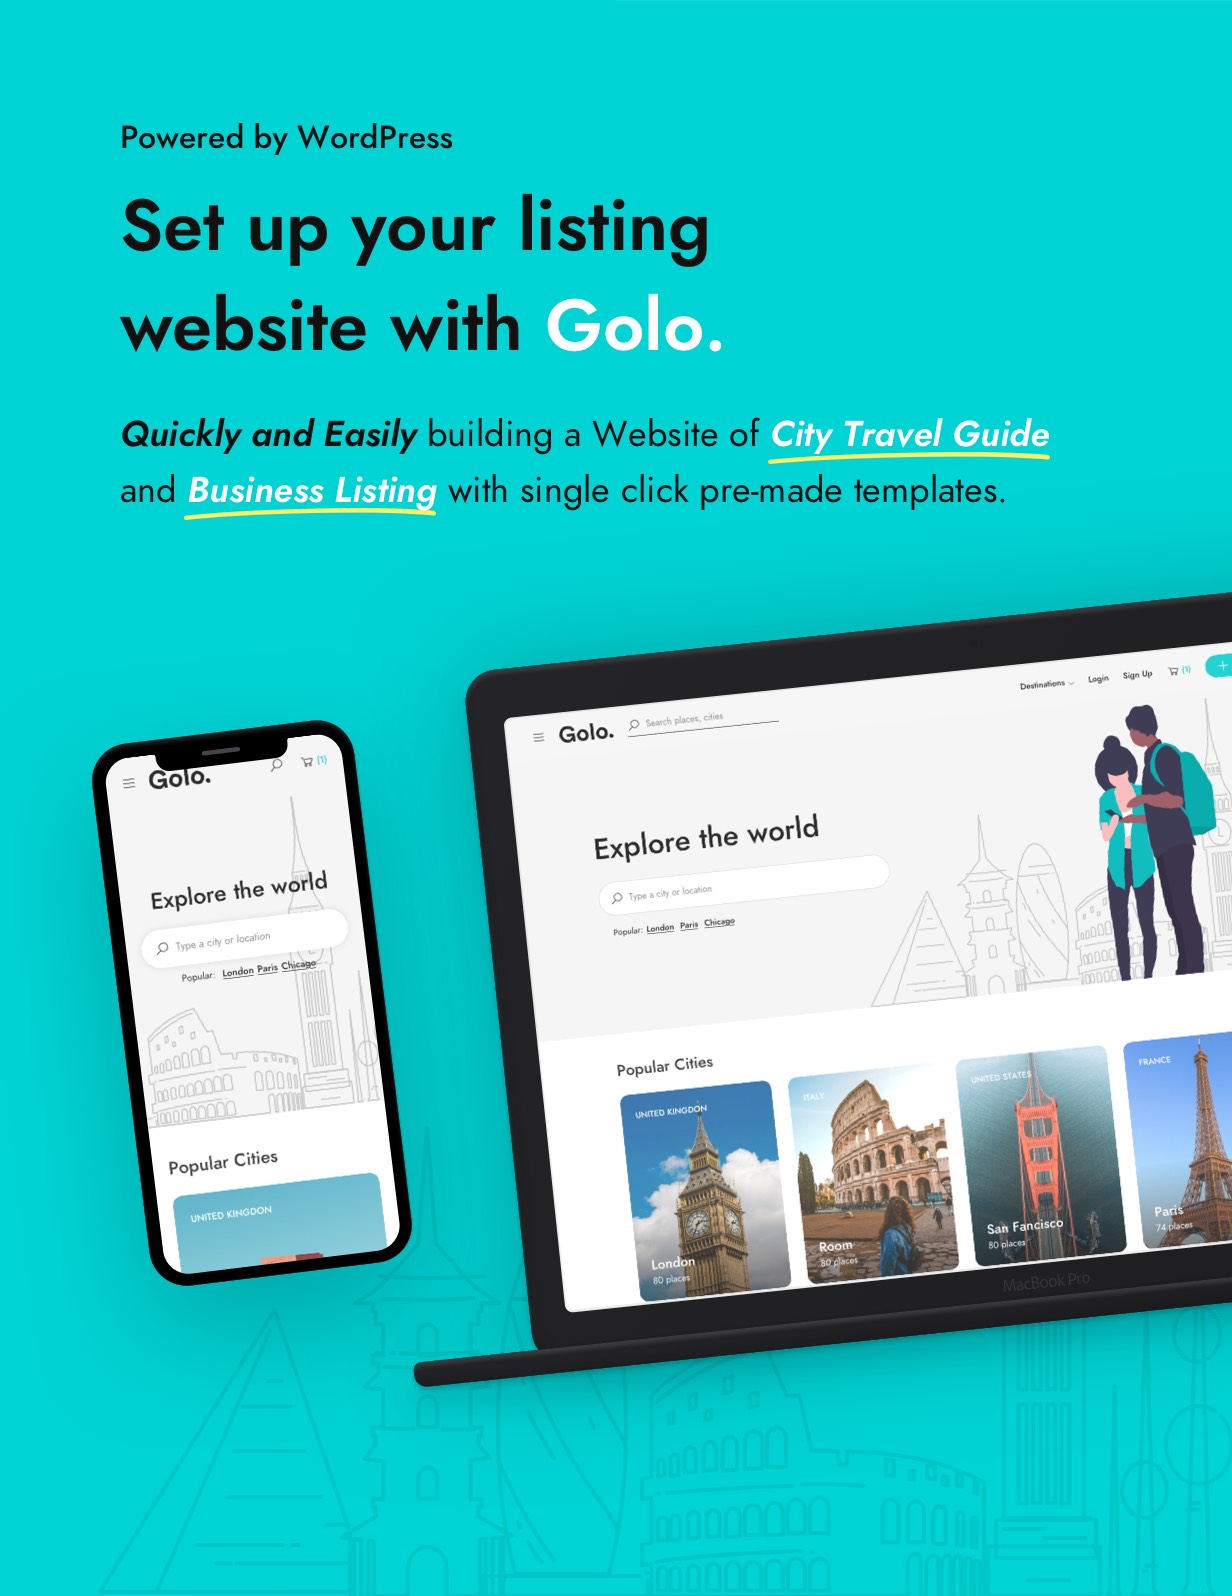 La mejor guía de viajes de la ciudad Tema y aplicación de WordPress